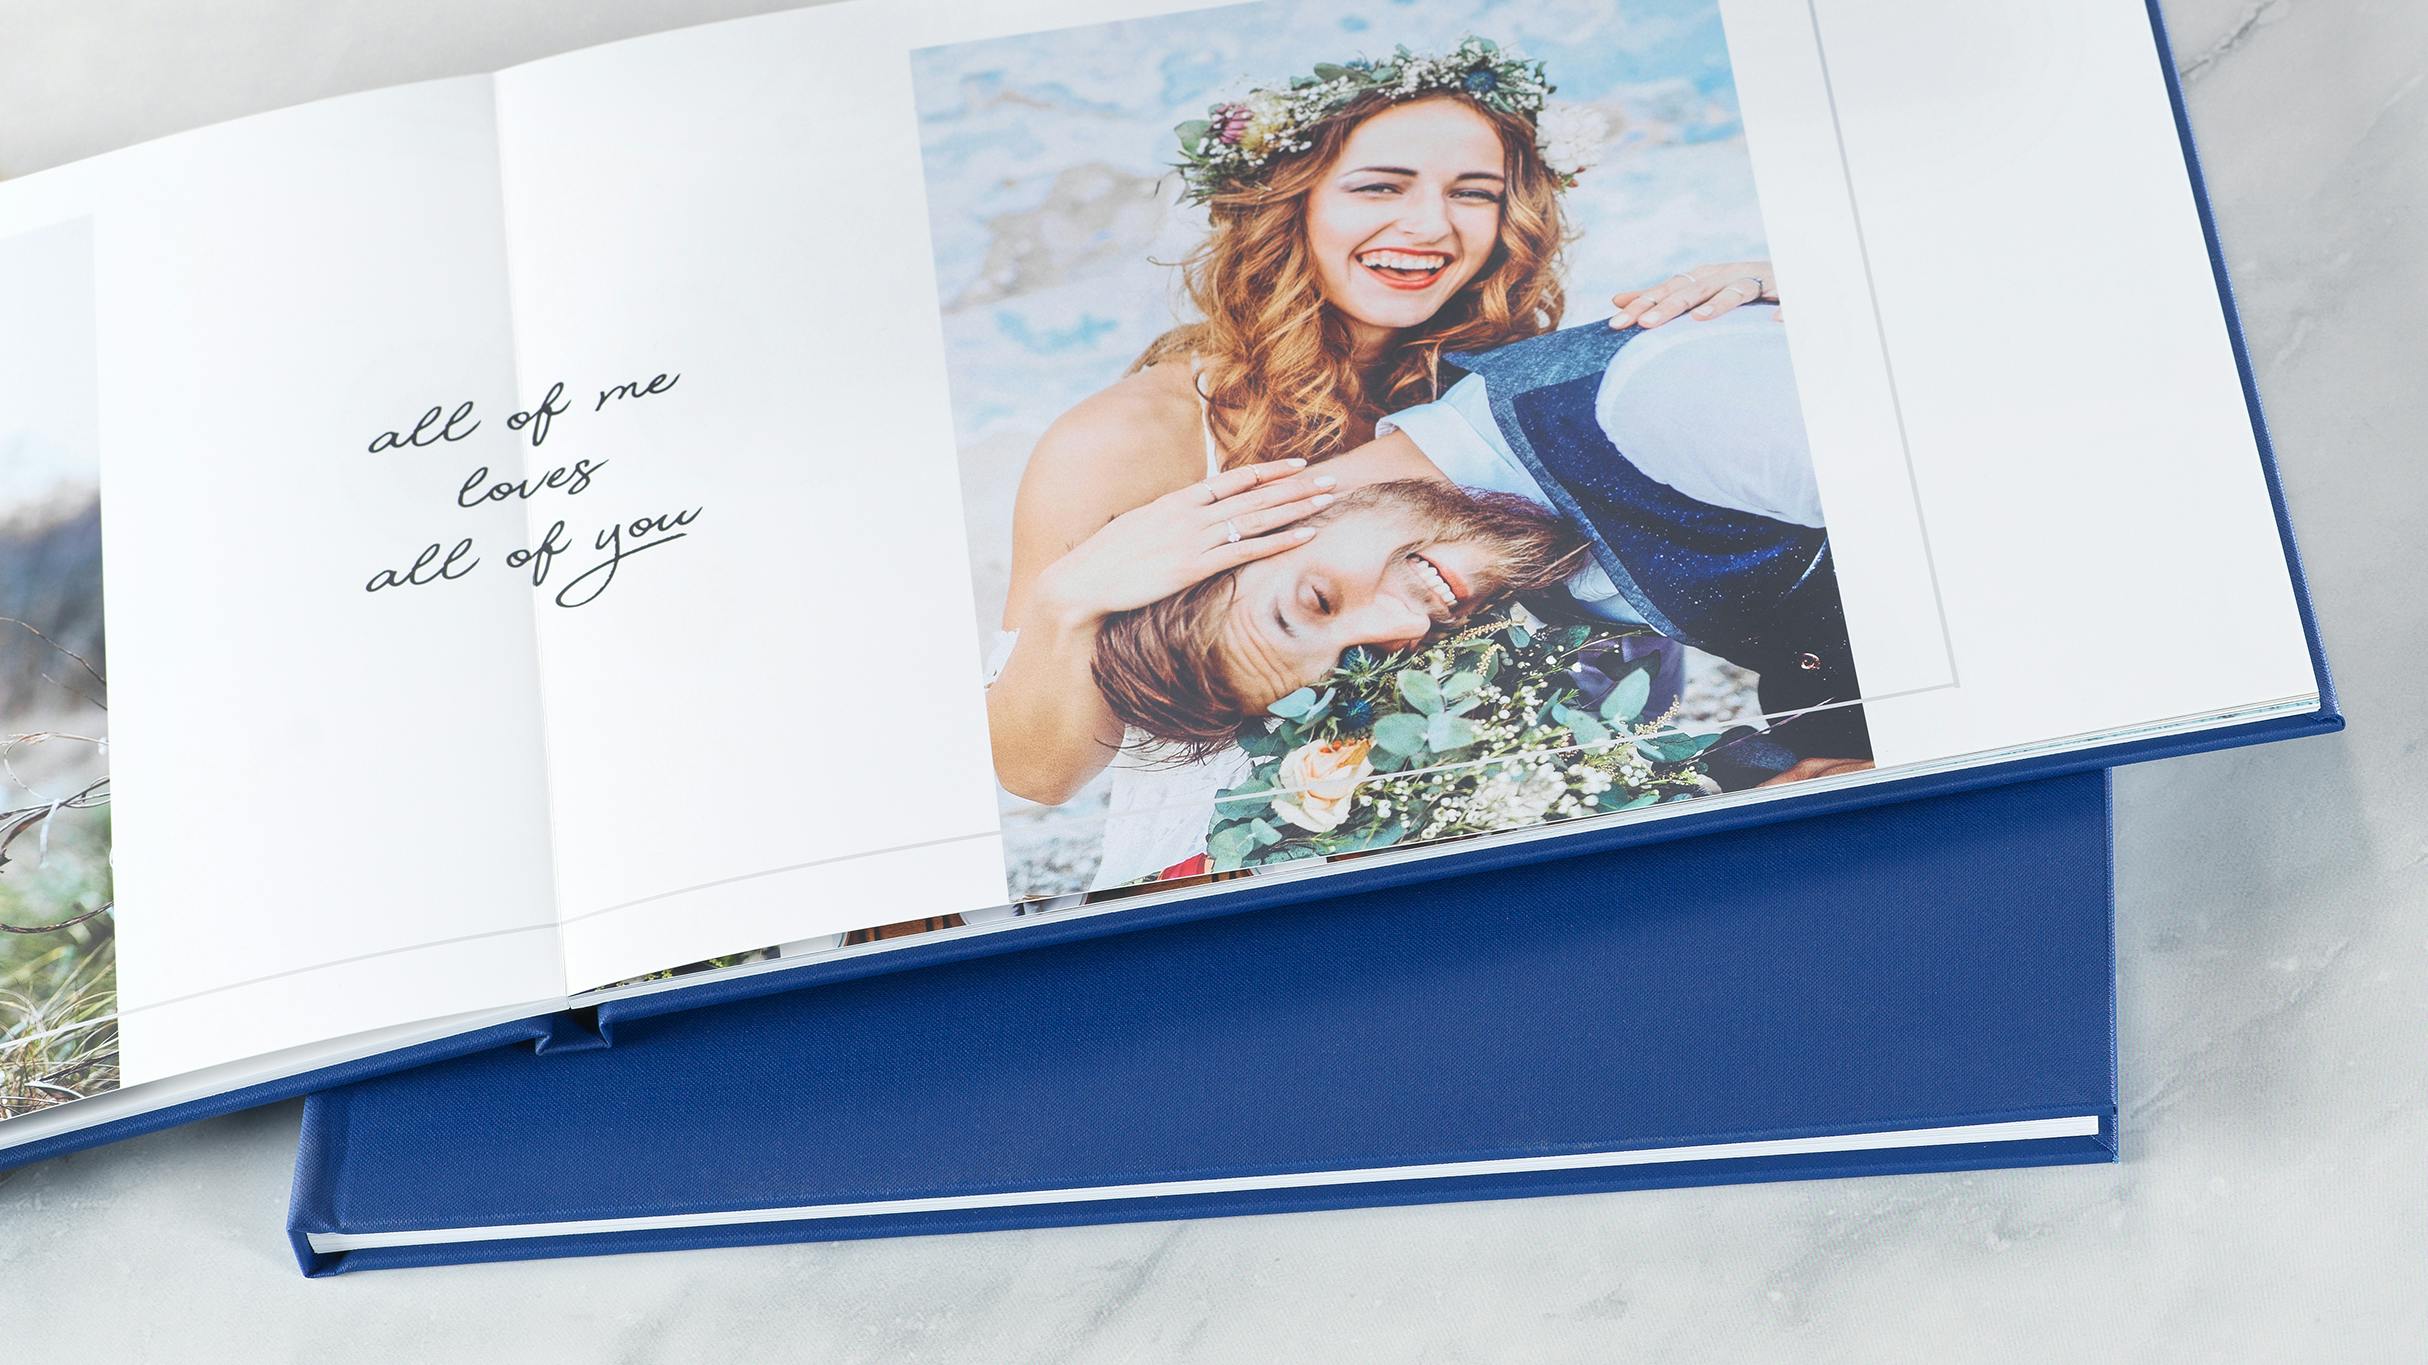 Comment créer le livre photo souvenirs de votre mariage ?